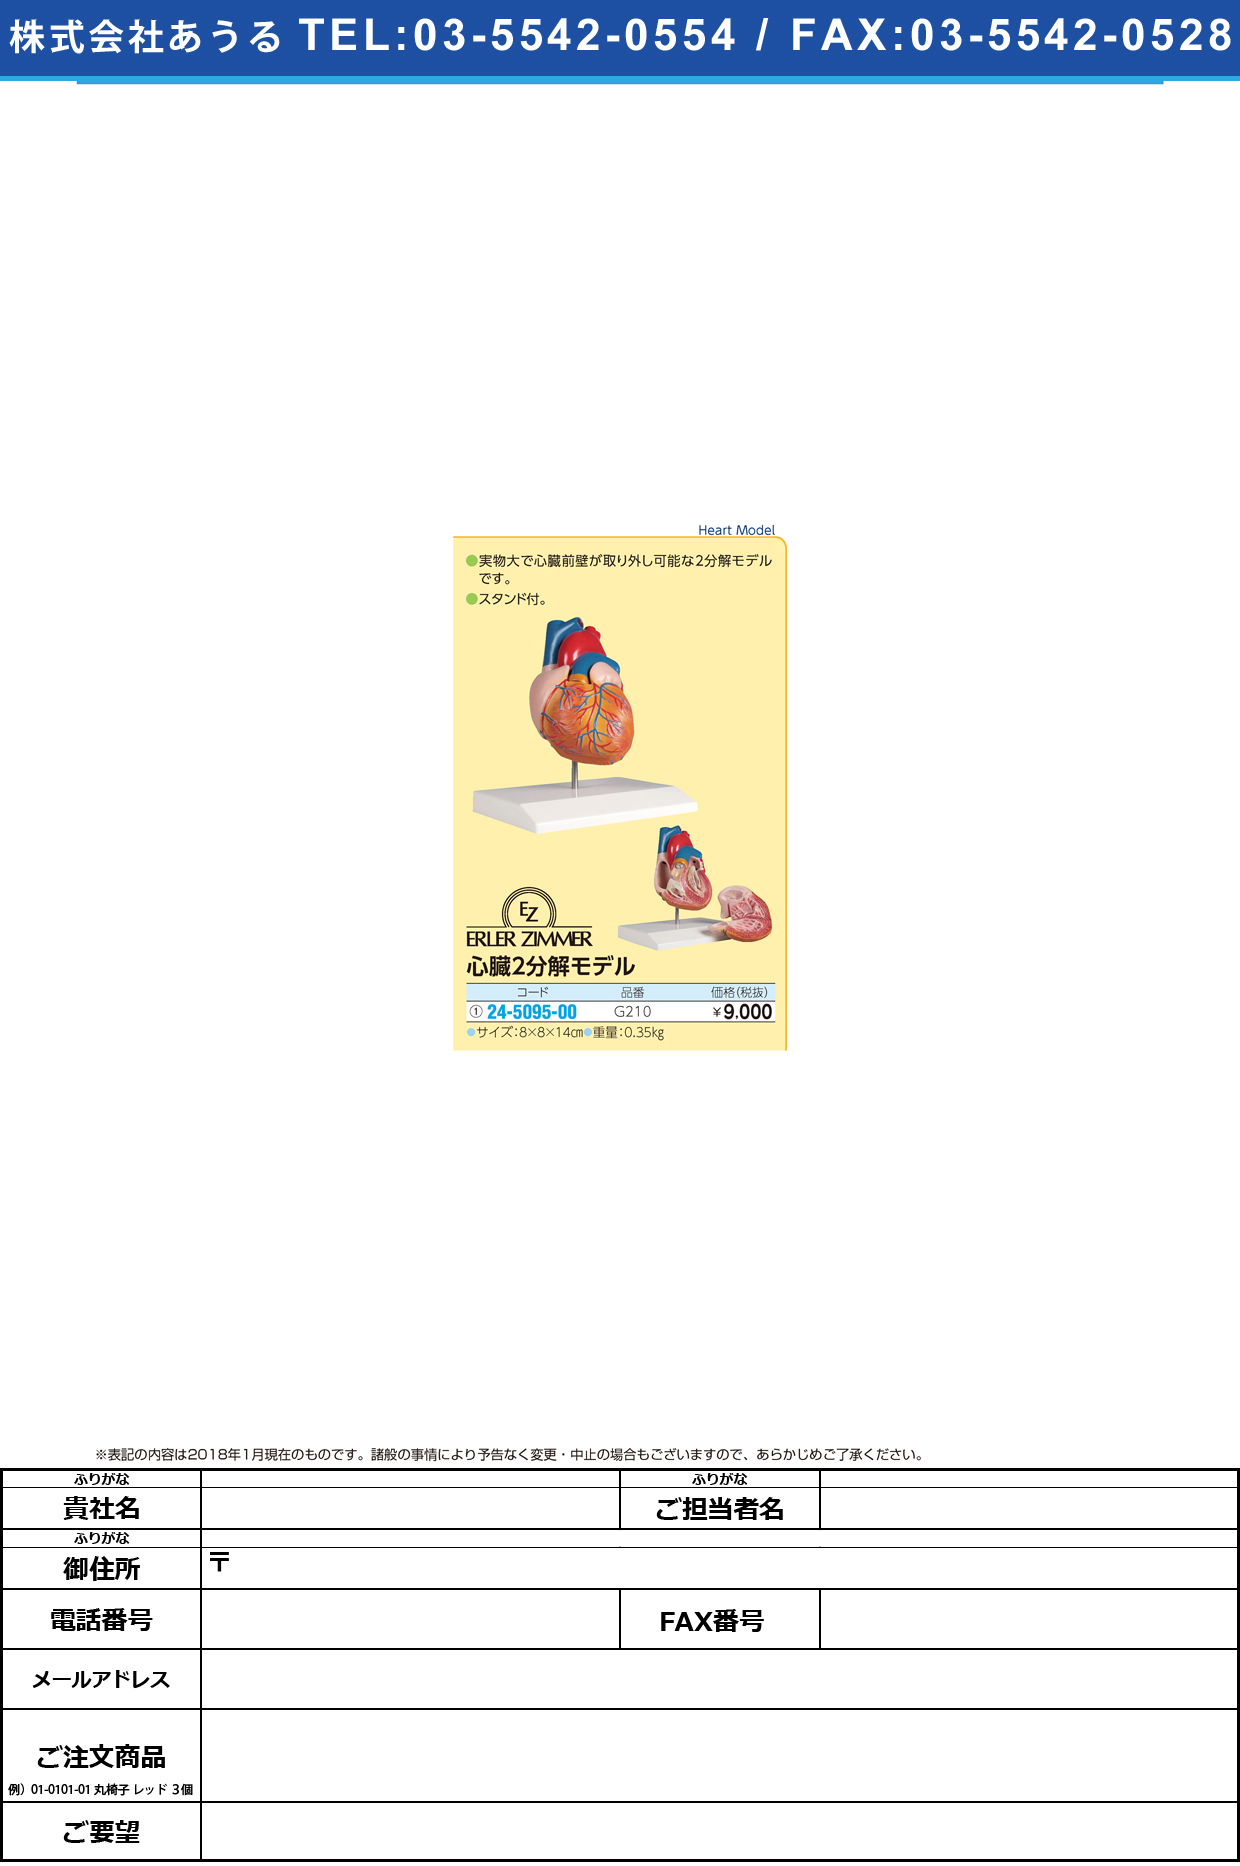 (24-5095-00)心臓２分解モデル G210 ｼﾝｿﾞｳ2ﾌﾞﾝｶｲﾓﾃﾞﾙ(エルラージーマー社)【1個単位】【2019年カタログ商品】